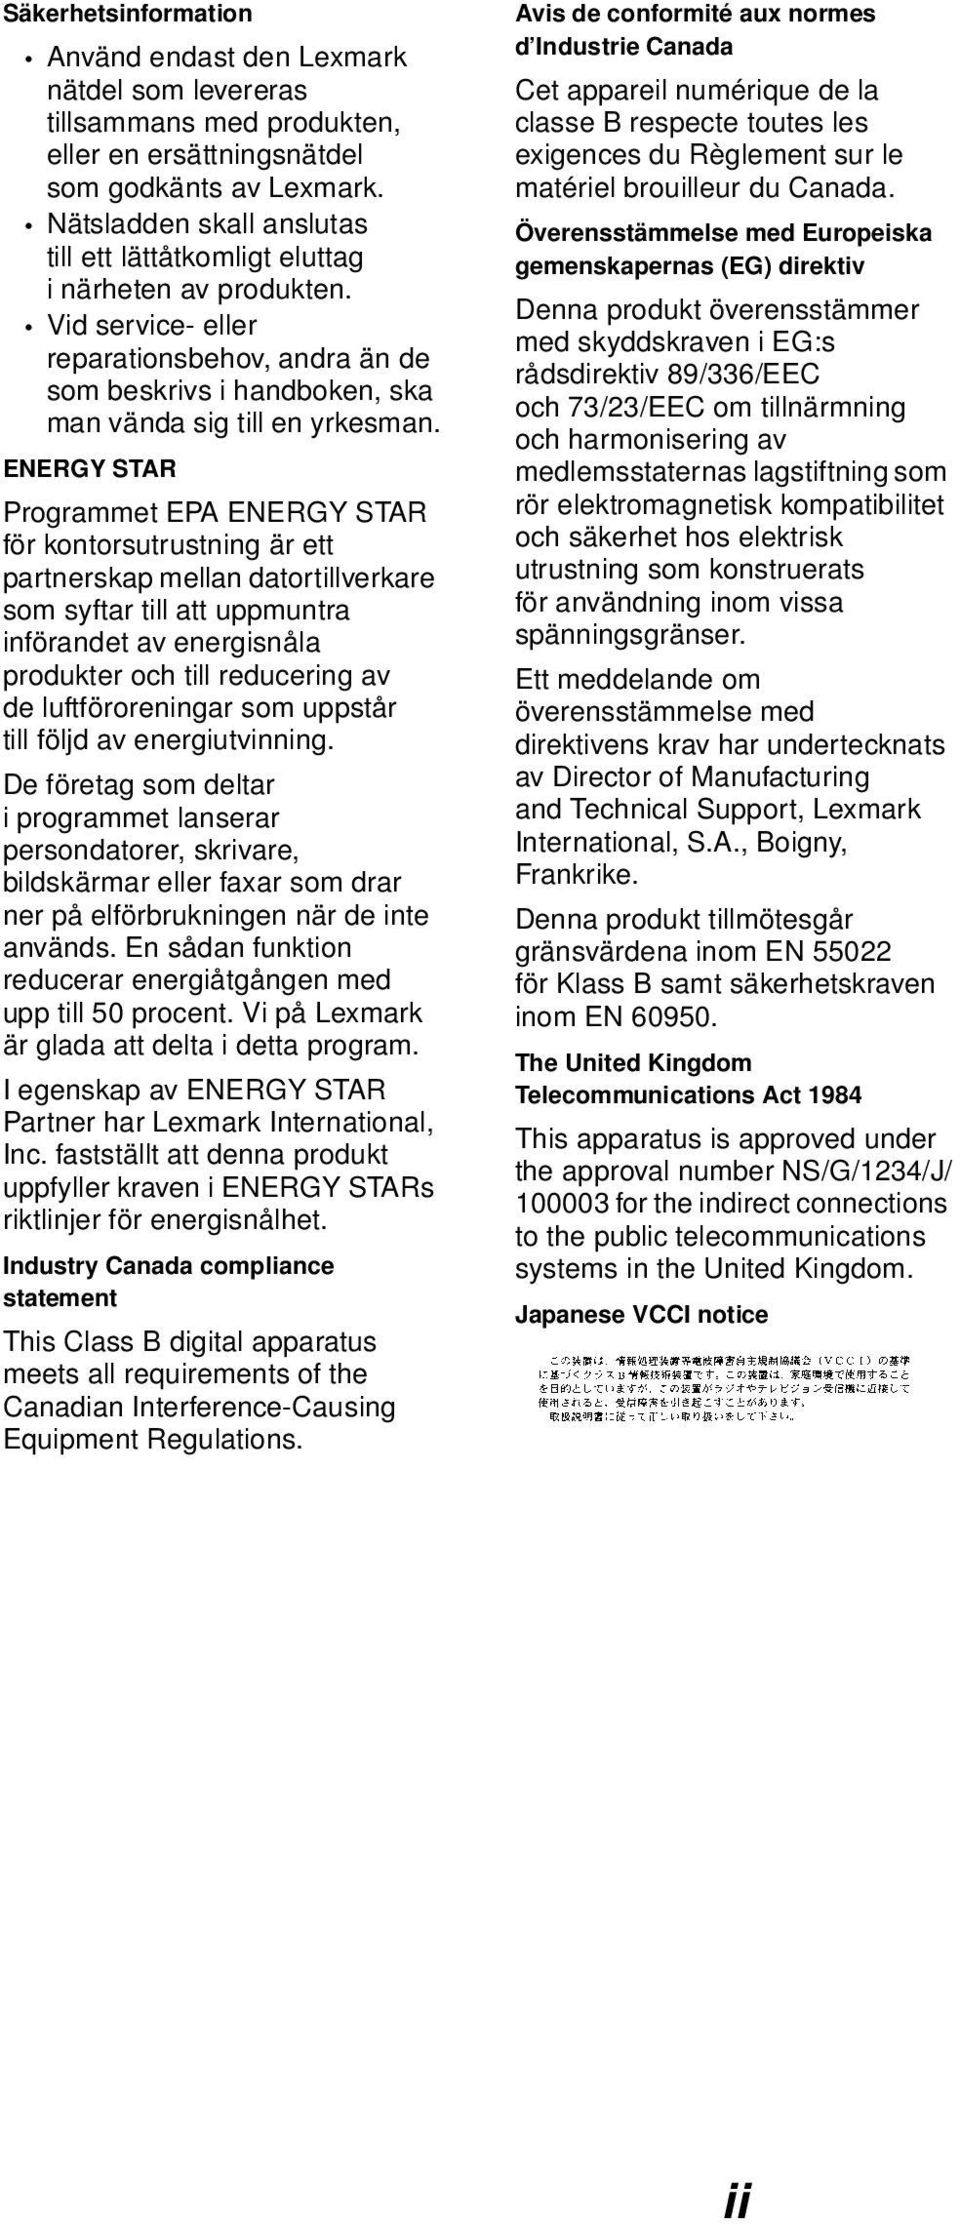 ENERGY STAR Programmet EPA ENERGY STAR för kontorsutrustning är ett partnerskap mellan datortillverkare som syftar till att uppmuntra införandet av energisnåla produkter och till reducering av de